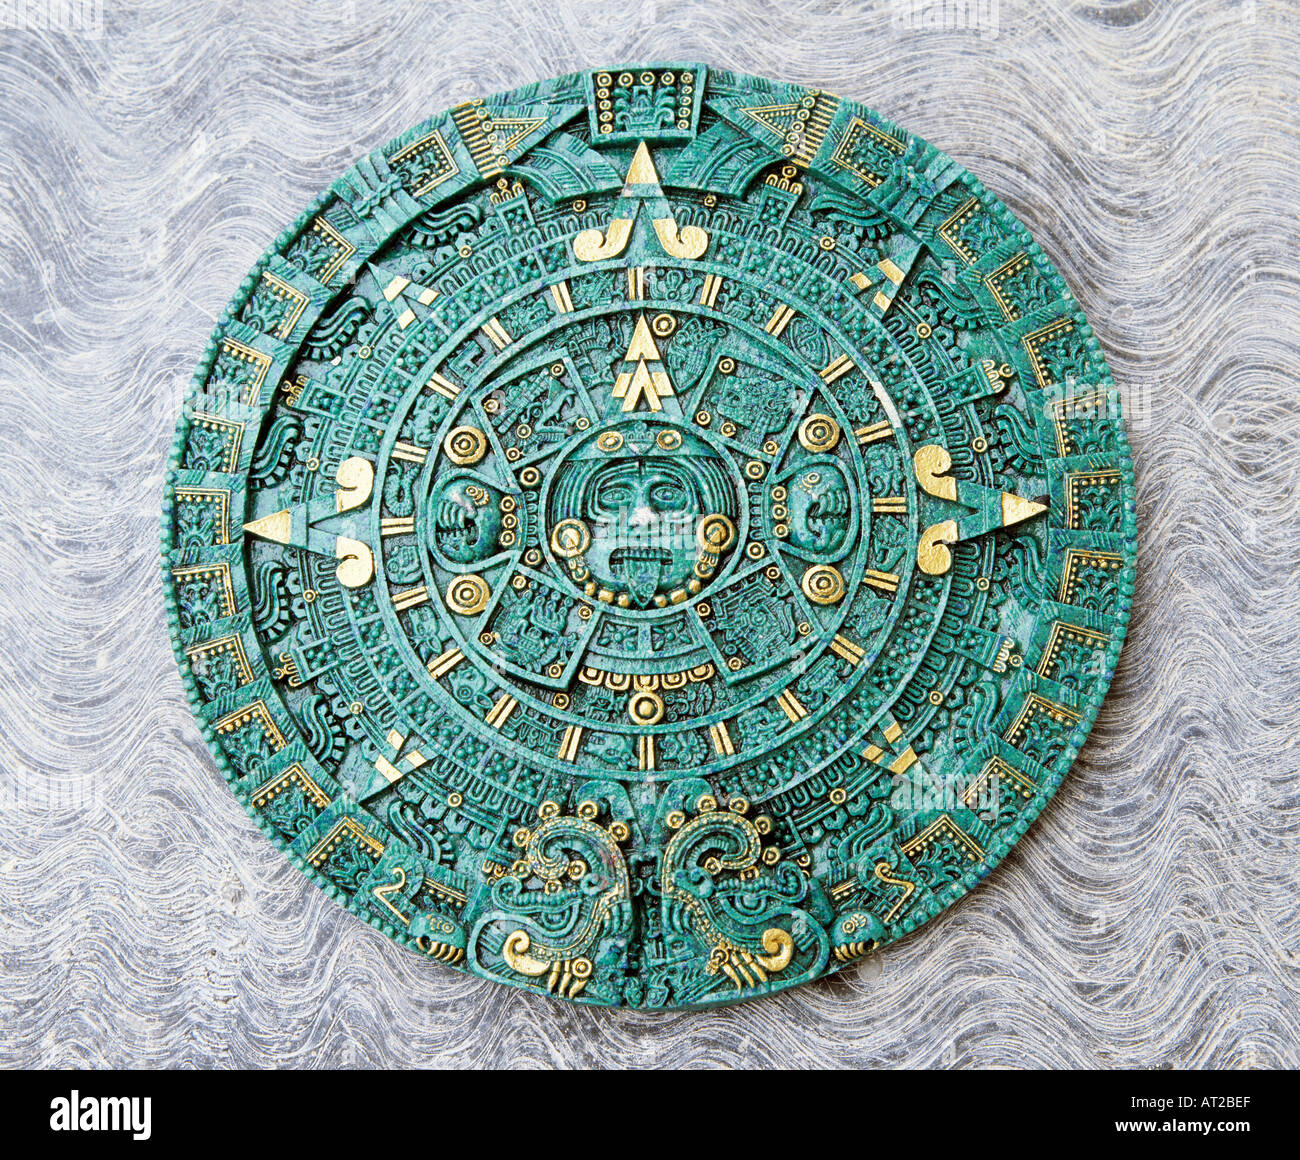 México copia del calendario azteca la Piedra del Sol Fotografía de